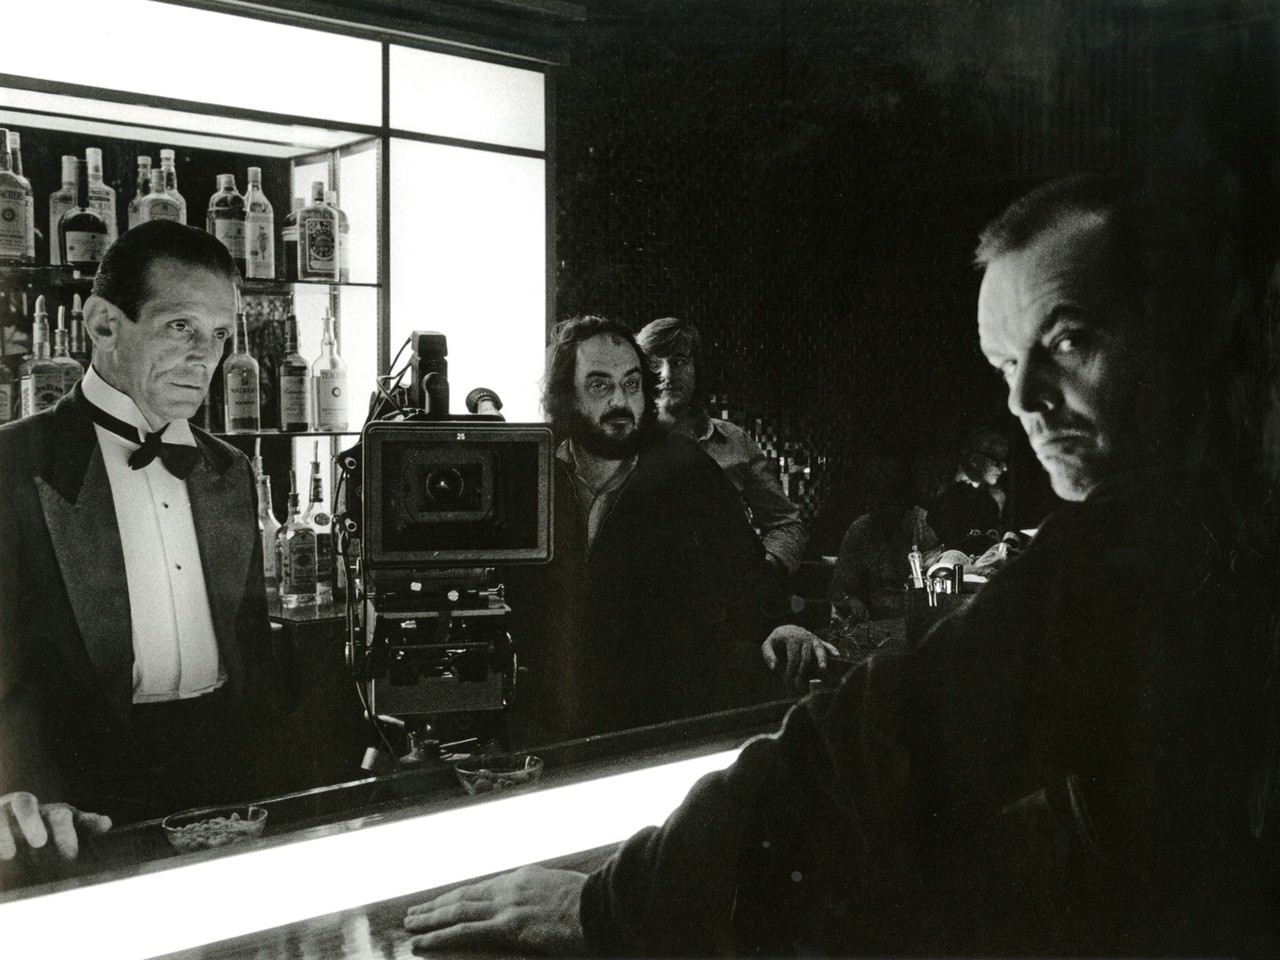 Joe Turkel (Lloyd), Stanley Kubrick, and Jack Nicholson on set.